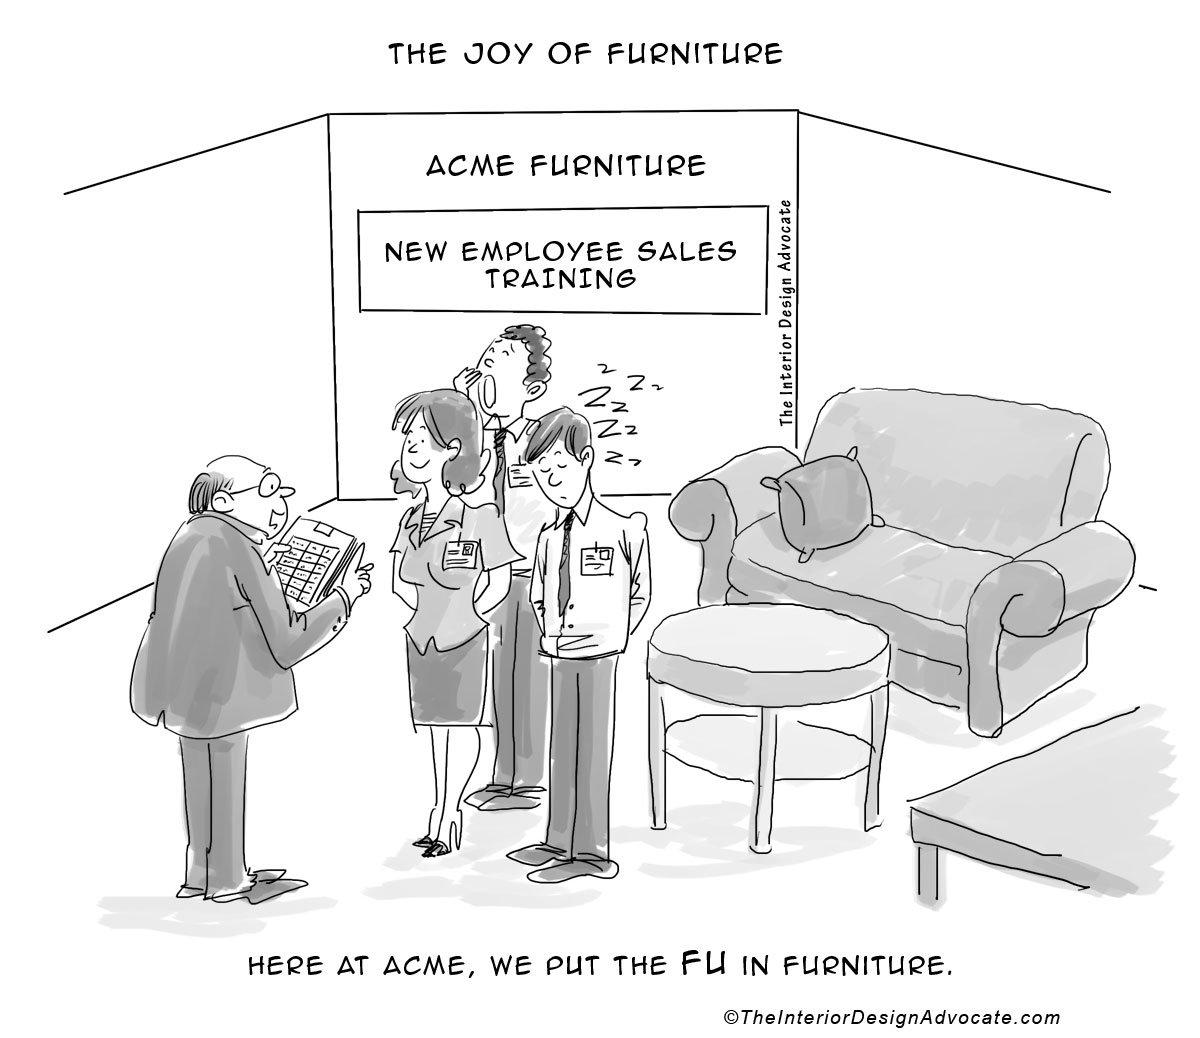 Design Giggles – Who Put the “FU” in Furniture?